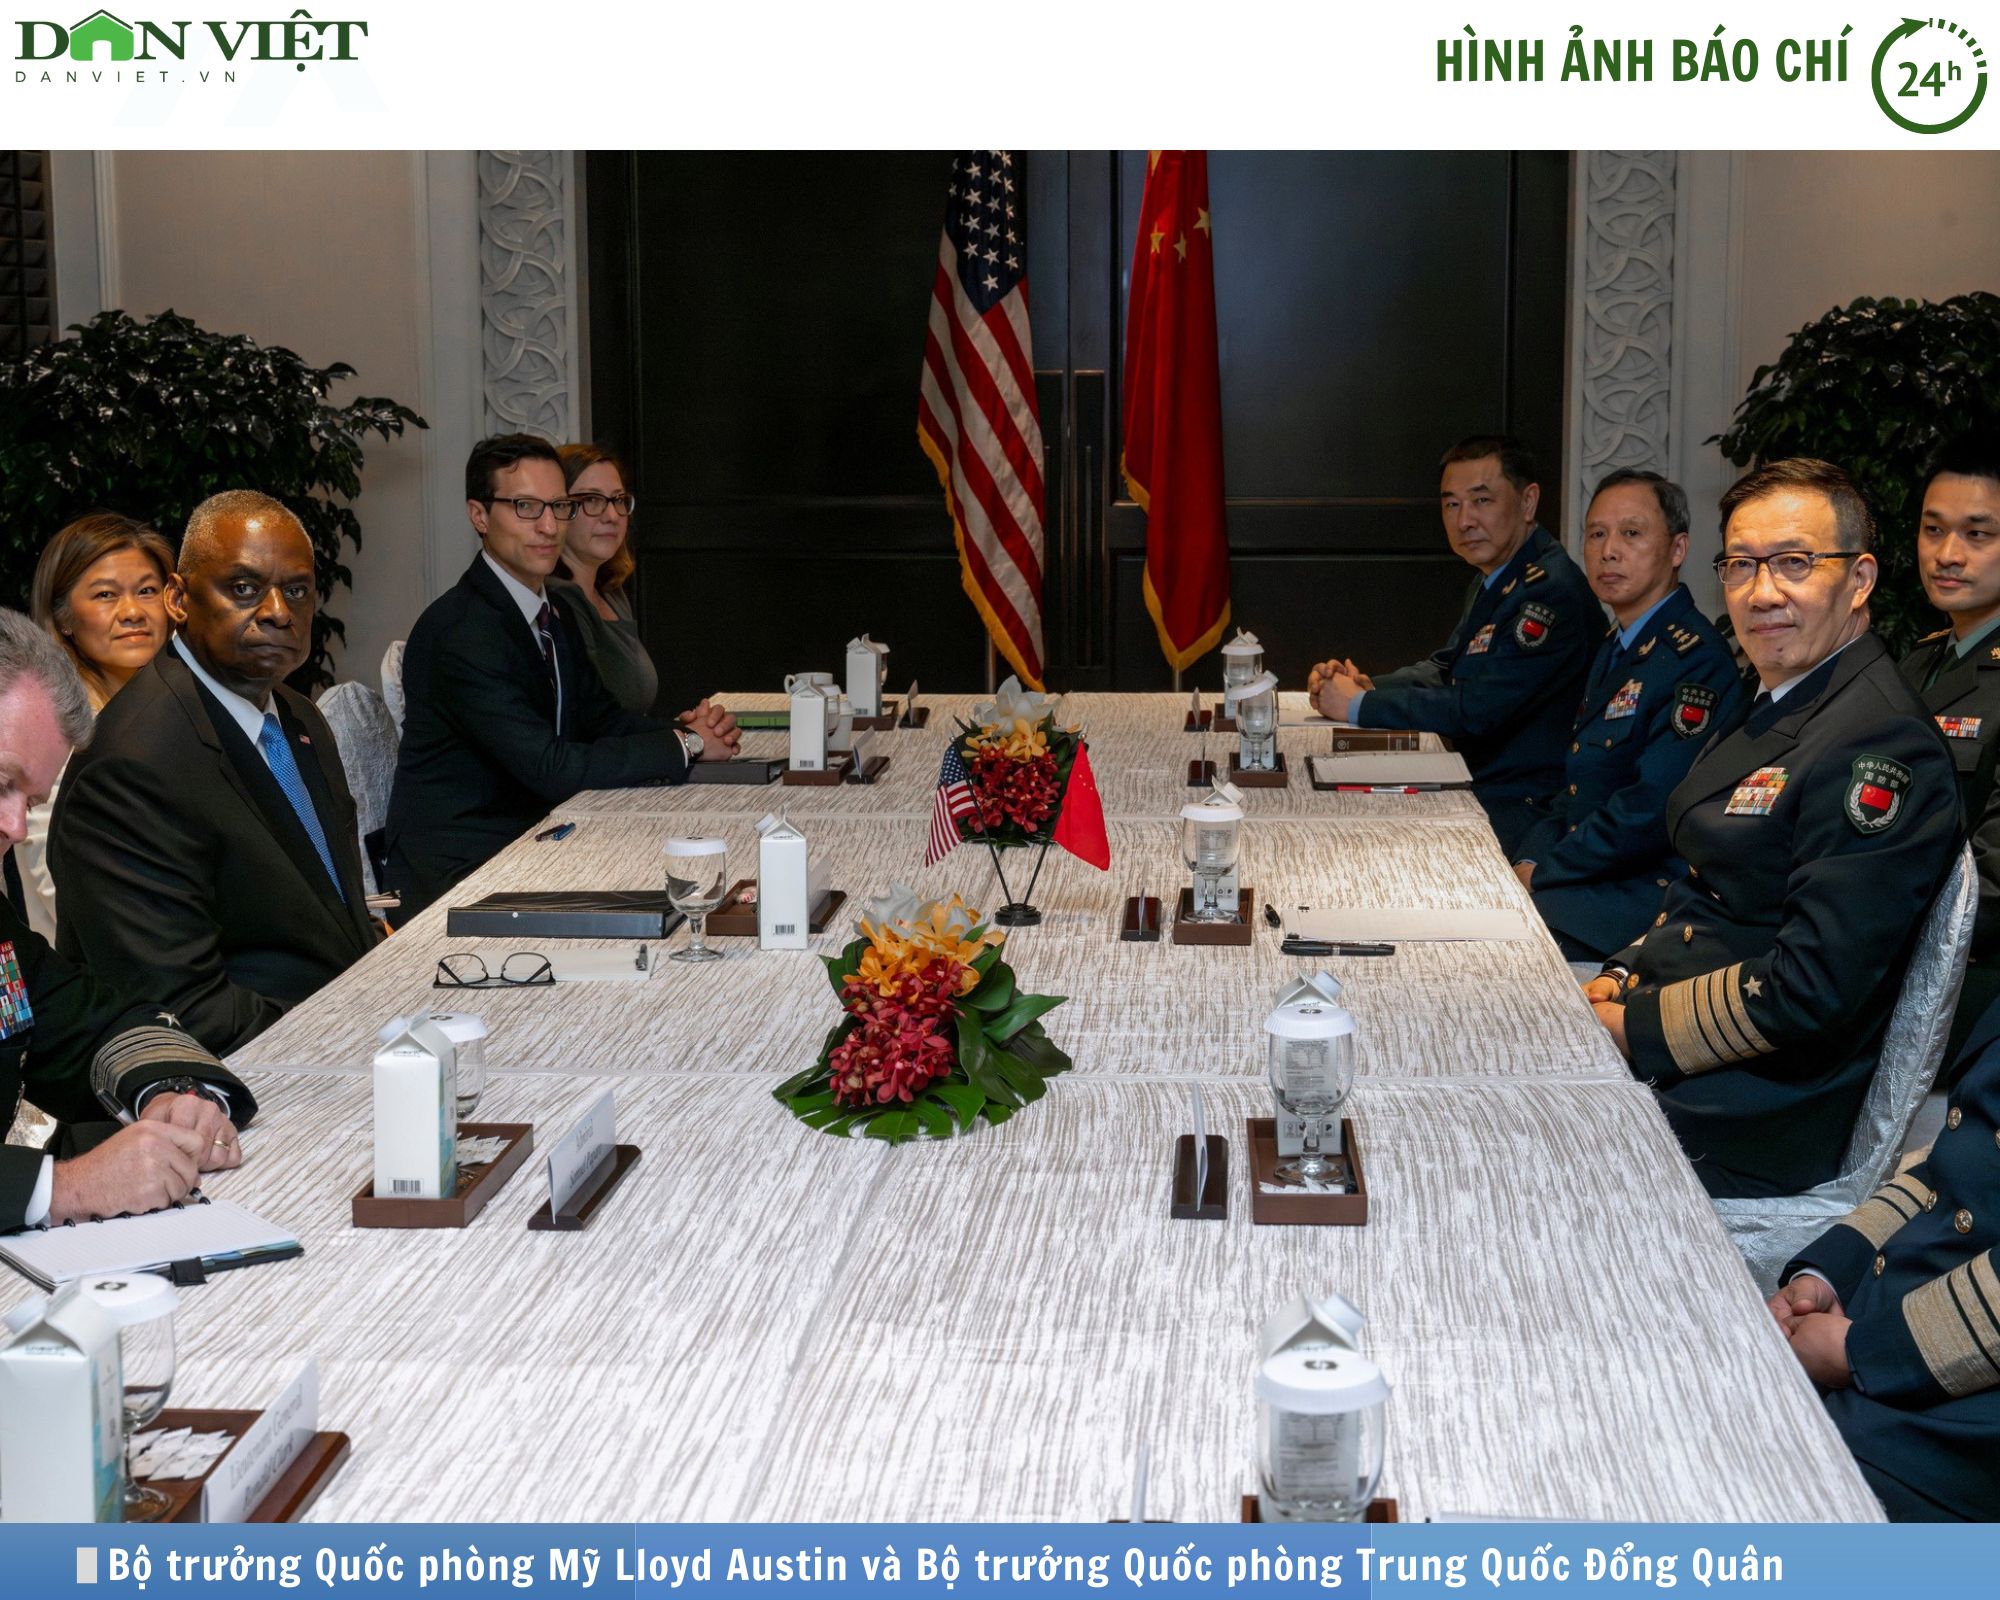 Hình ảnh báo chí 24h: Bộ trưởng Quốc phòng Mỹ - Trung thẳng đổi về vấn đề Đài Loan và Biển Đông- Ảnh 1.